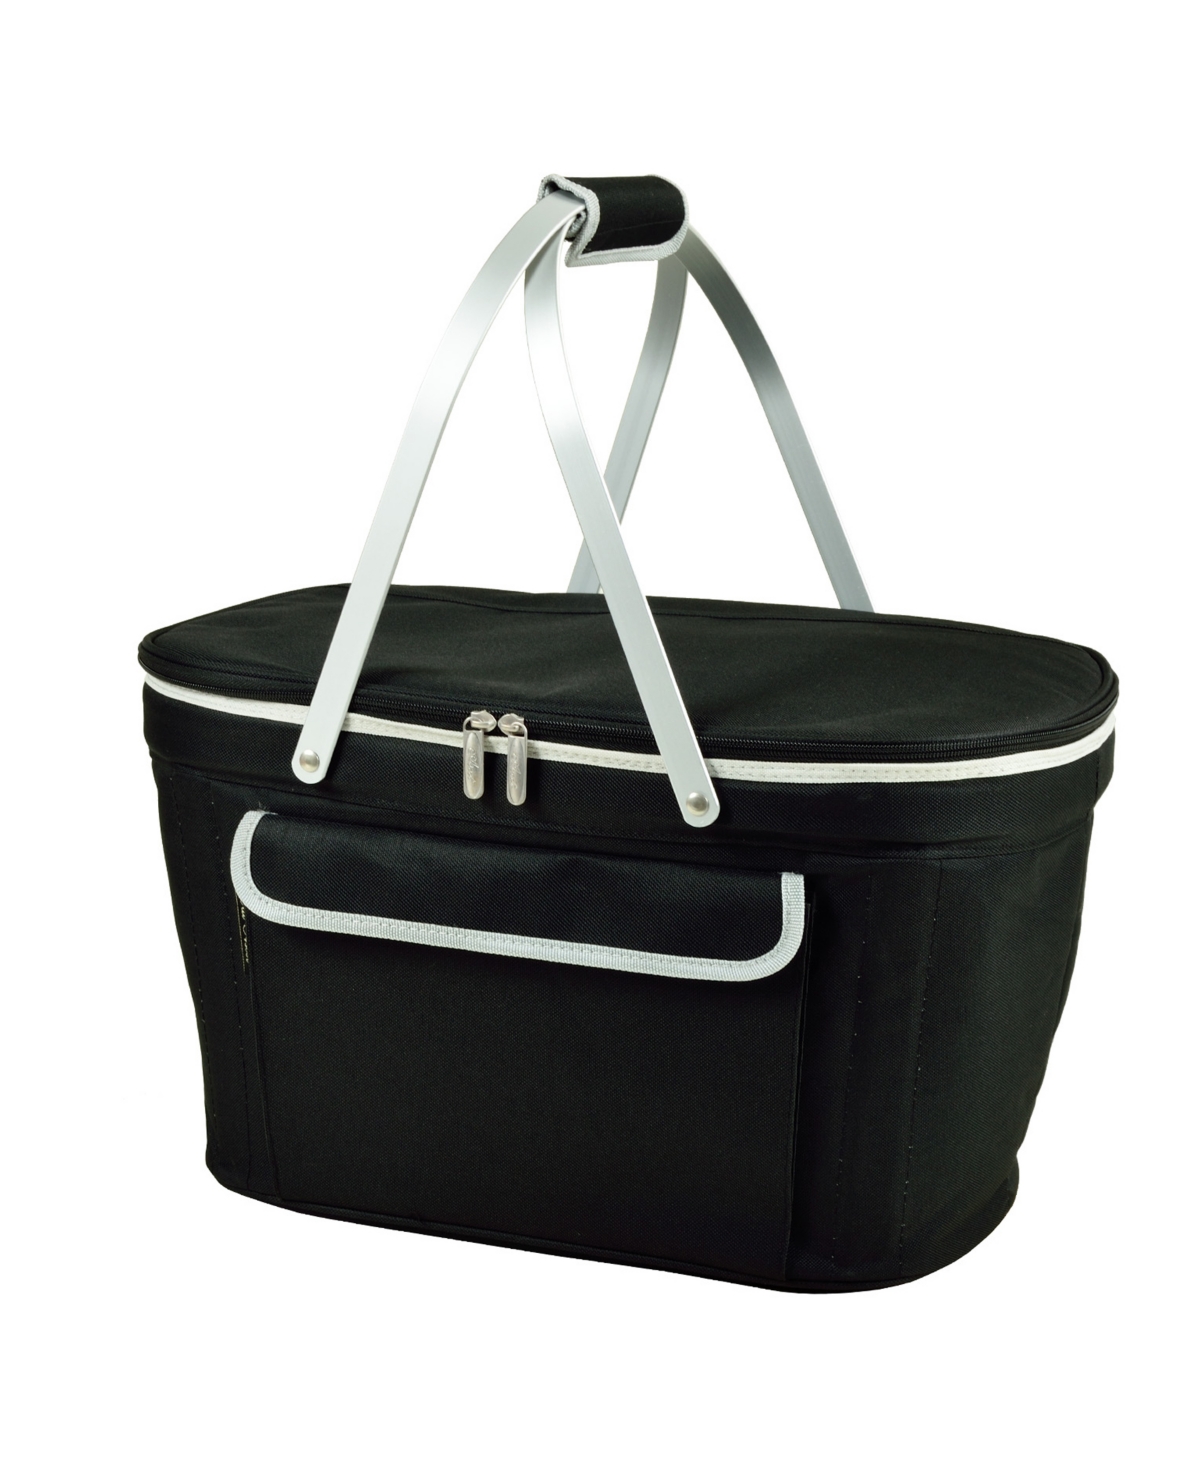 Market Basket Picnic Cooler, Collapsible - Sturdy Aluminum Frame - Black